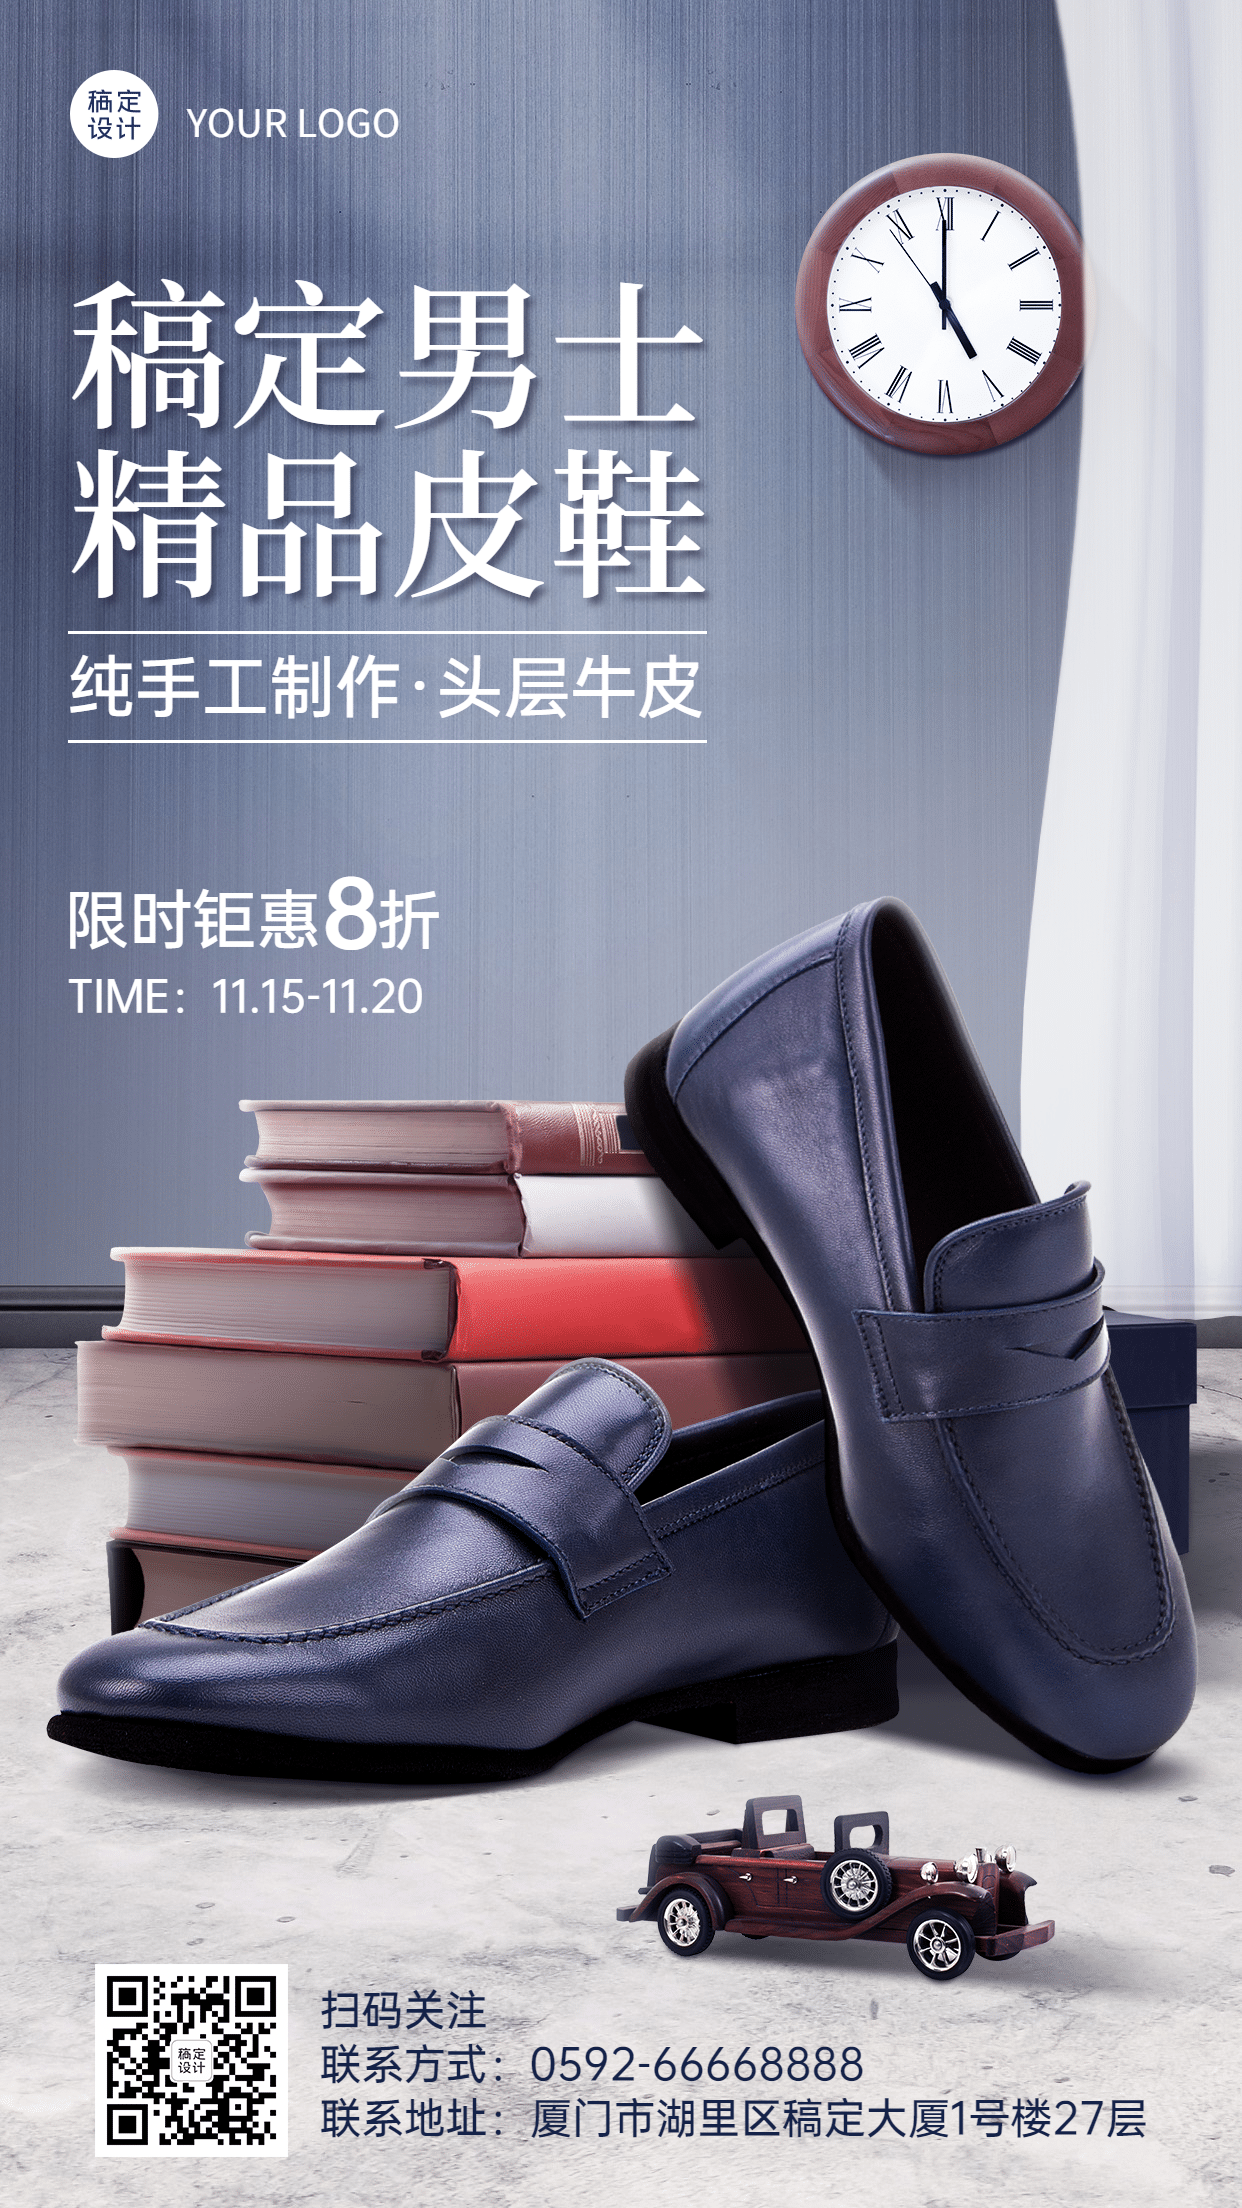 皮鞋品牌宣传产品展示手机海报